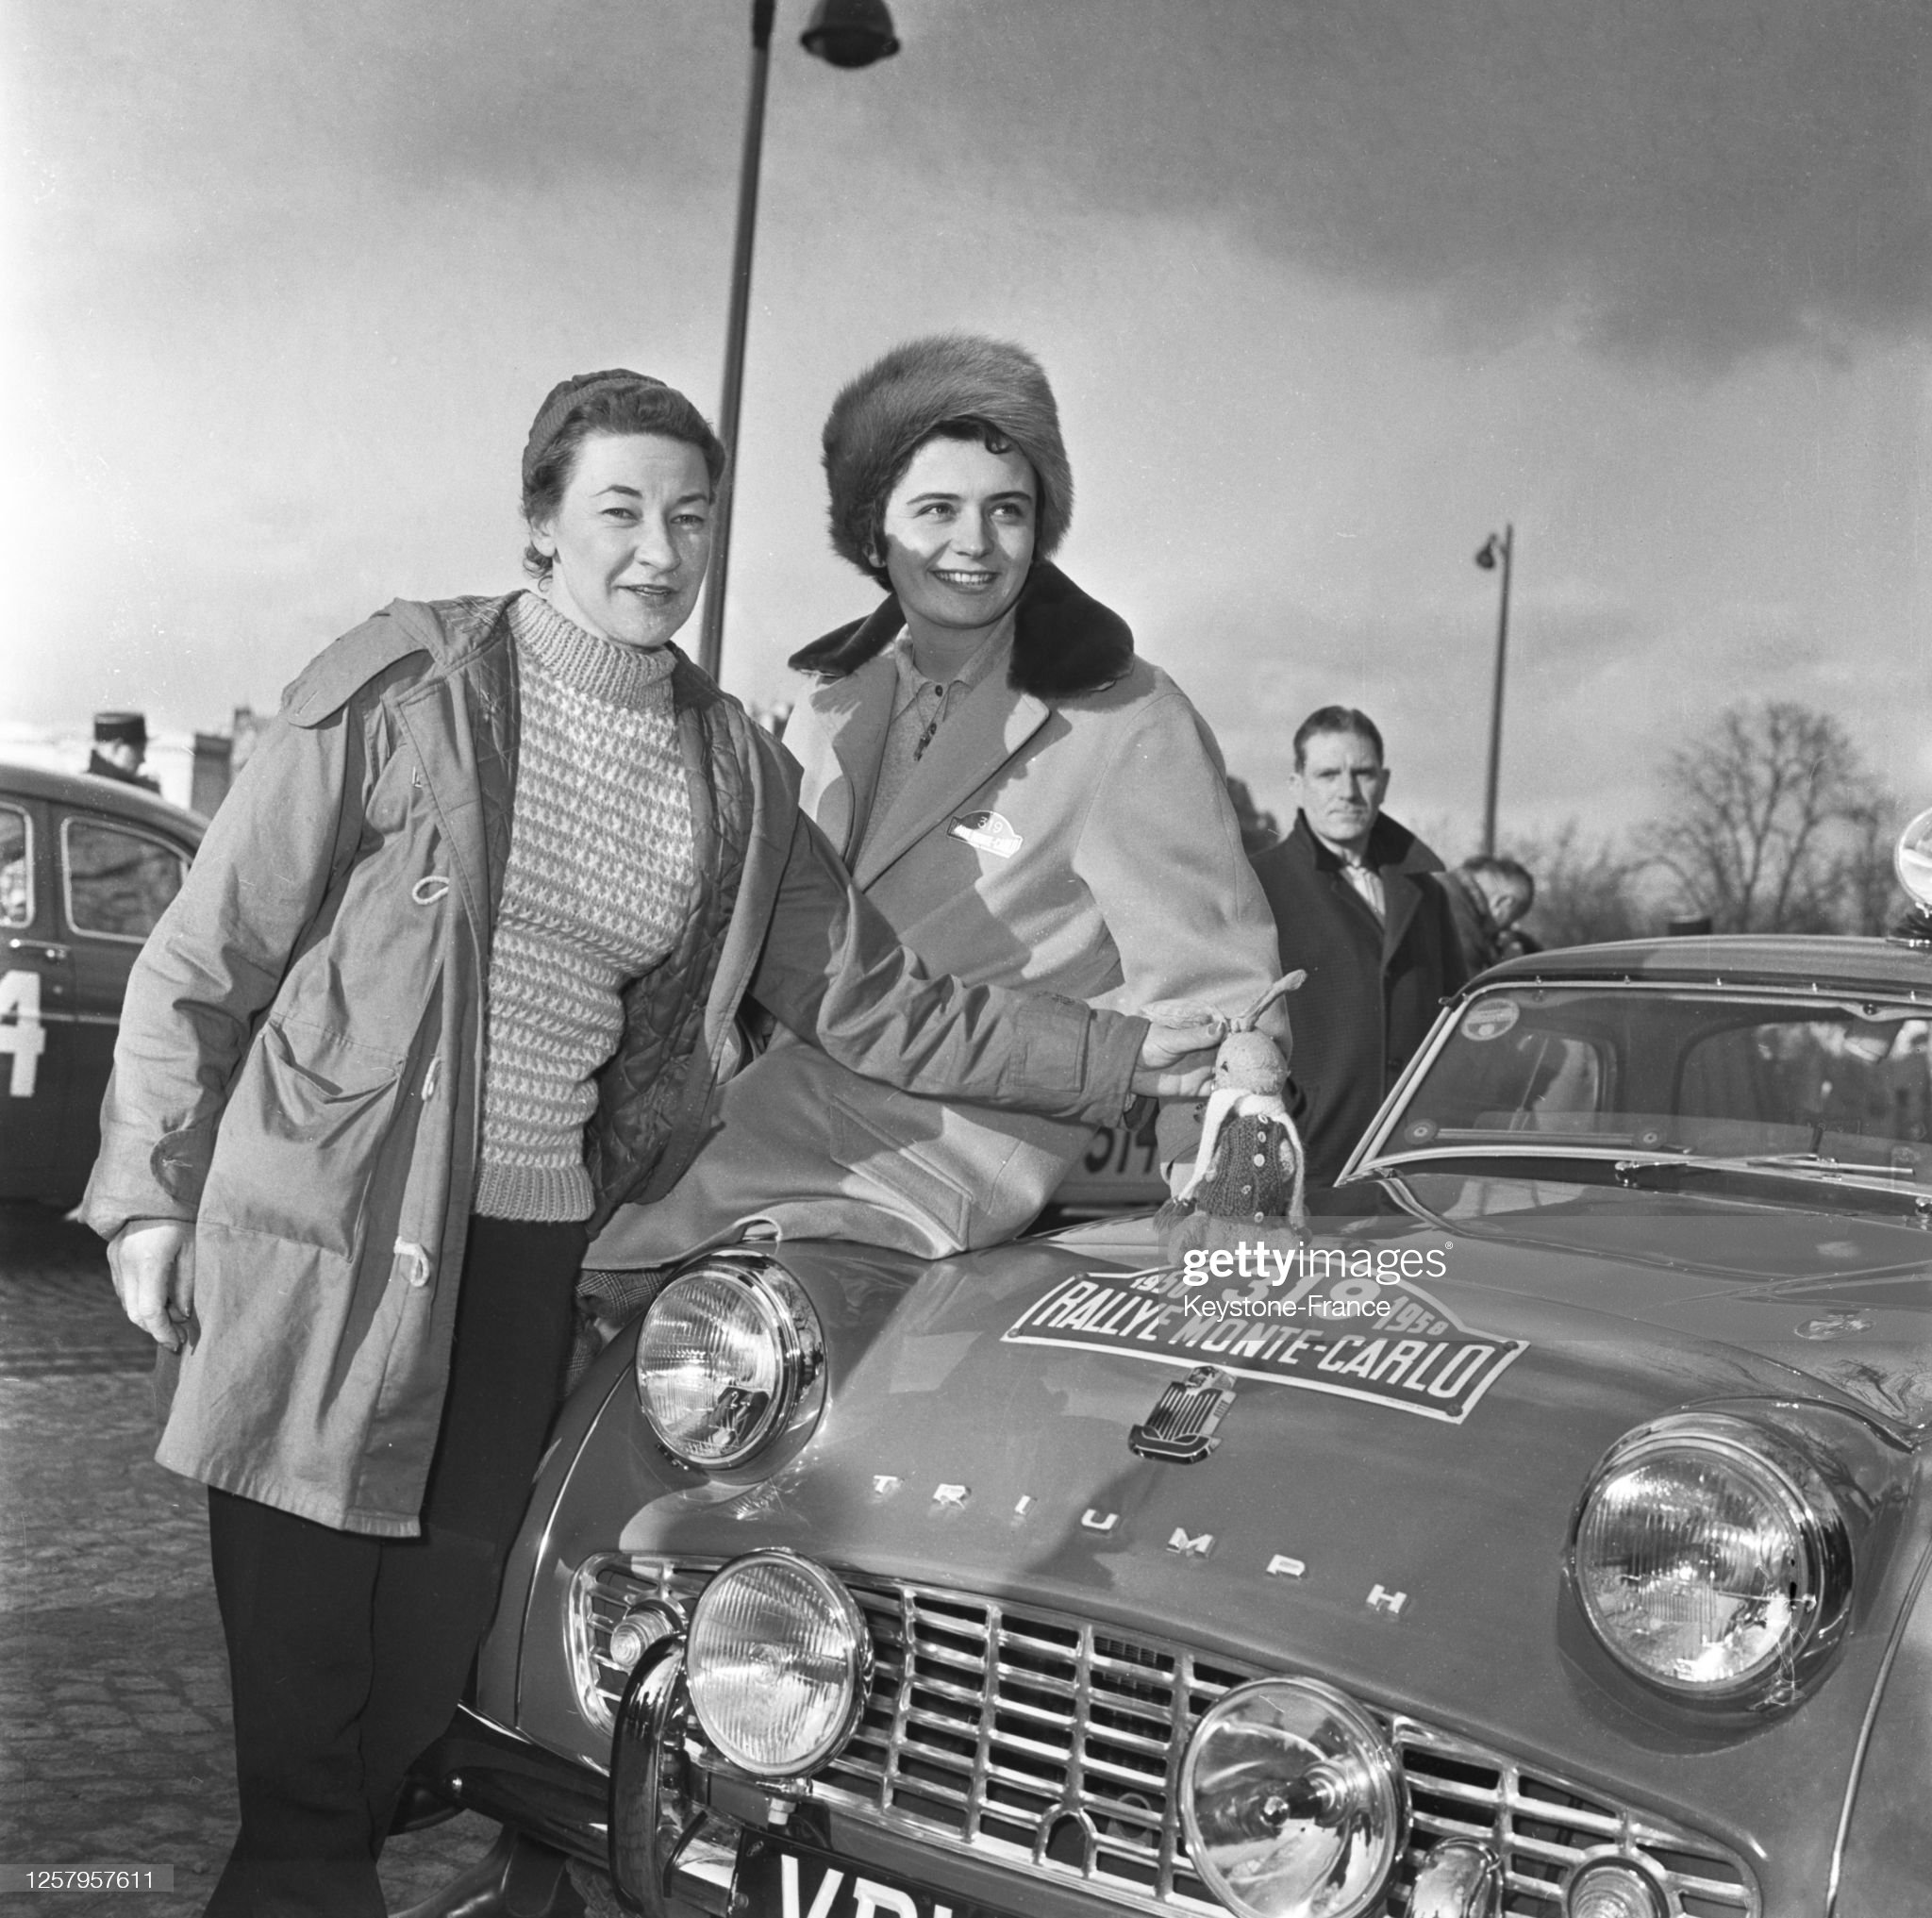 La pilote française Annie Soisbault avec sa 'Triumph' au départ du rallye automobile Monte-Carlo à Paris, le 22 janvier 1958, France.